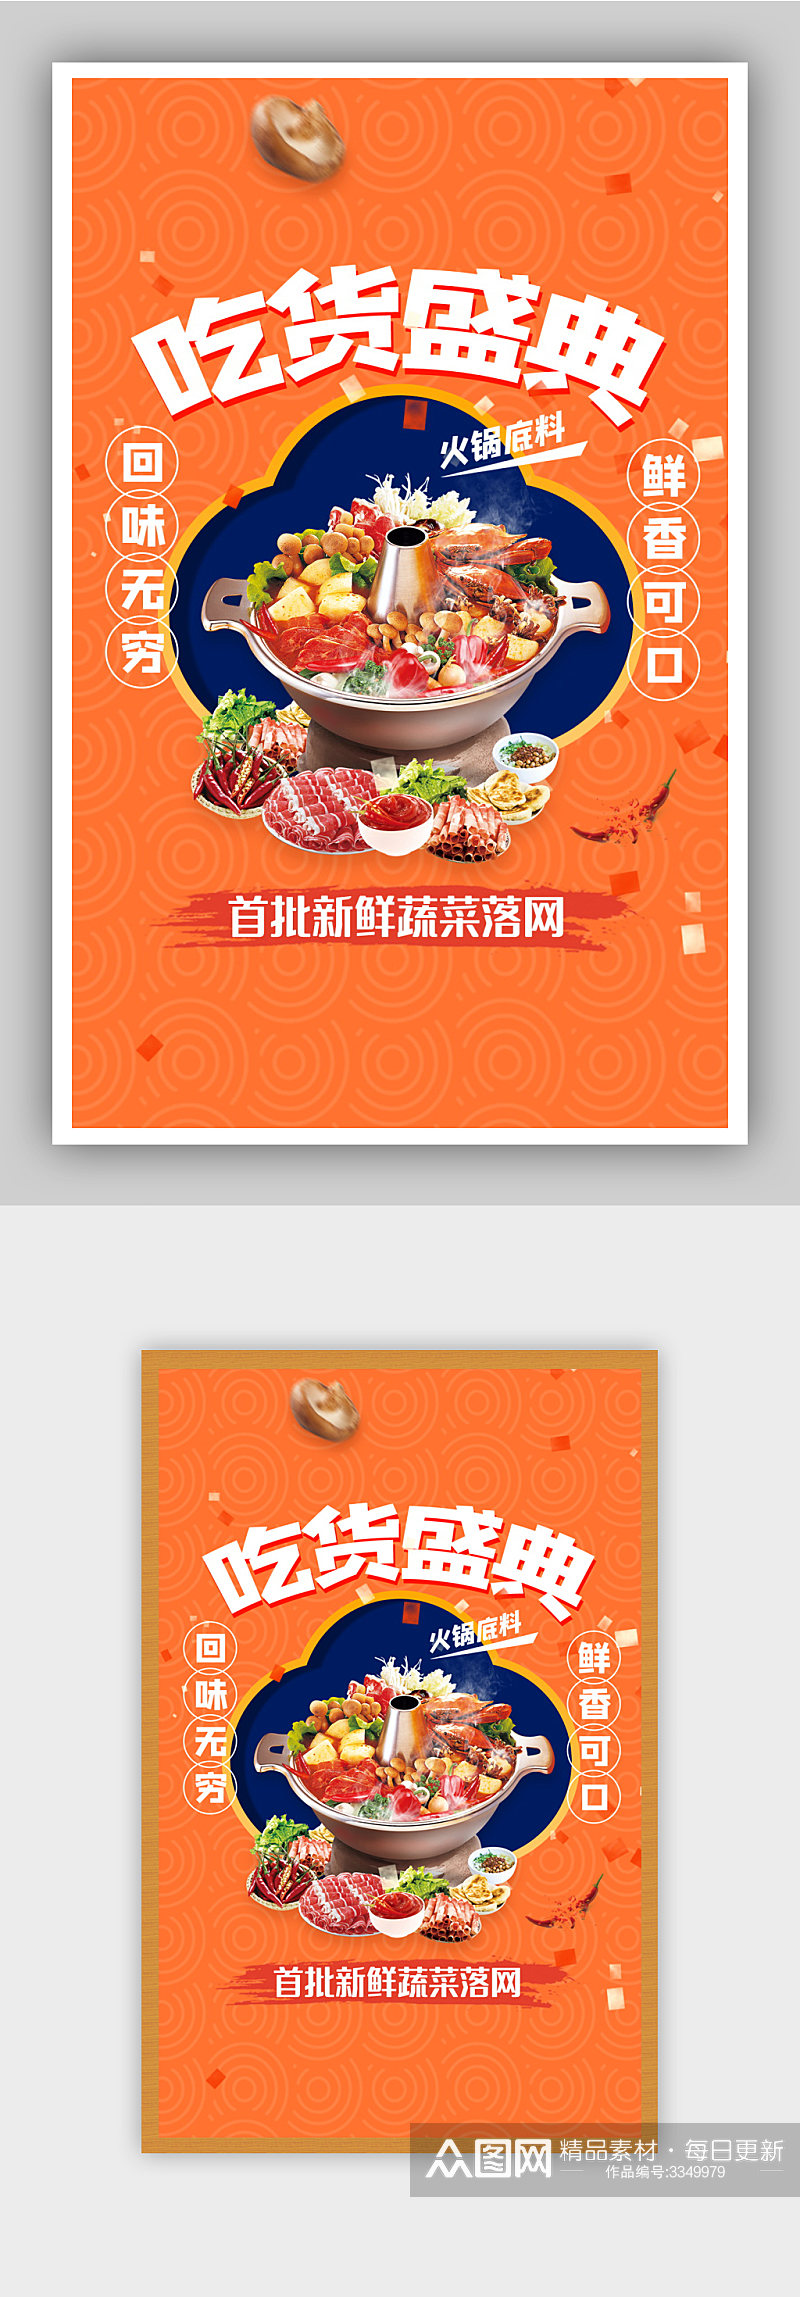 吃货节中国风背景食品火锅海报素材